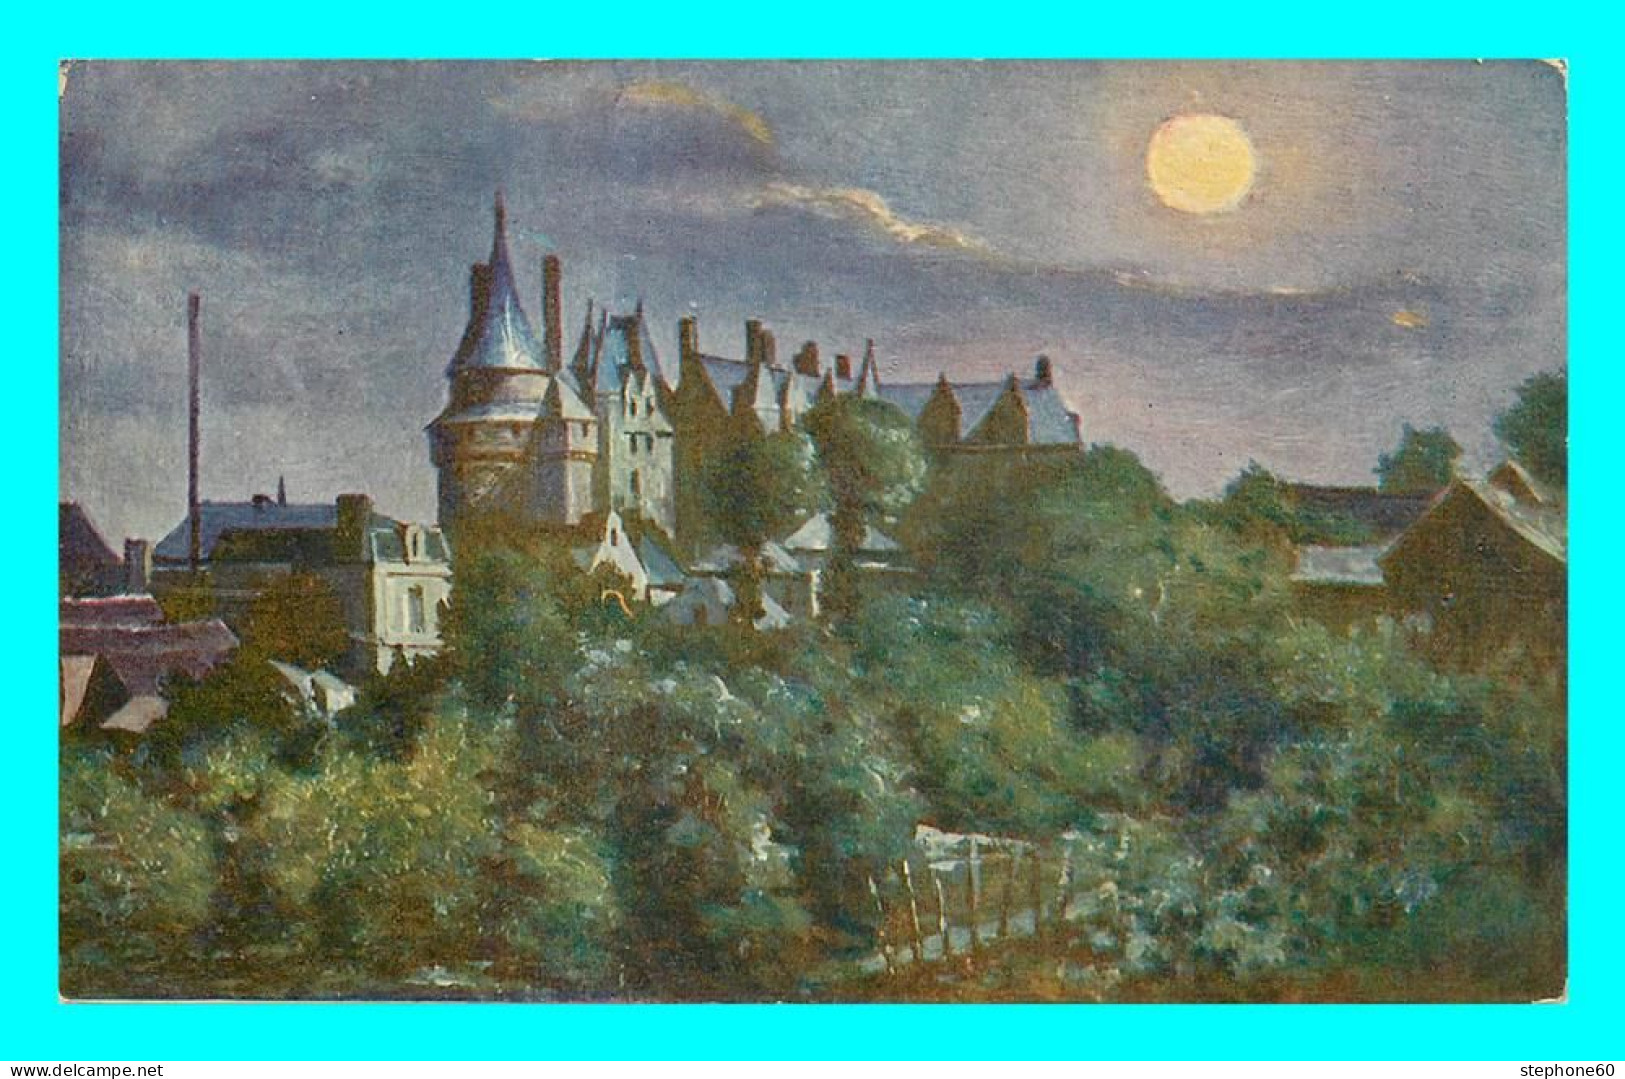 A881 / 613 37 - LANGEAIS Chateau - Delpy Chateaux Et Vieux Manoirs De France - Langeais